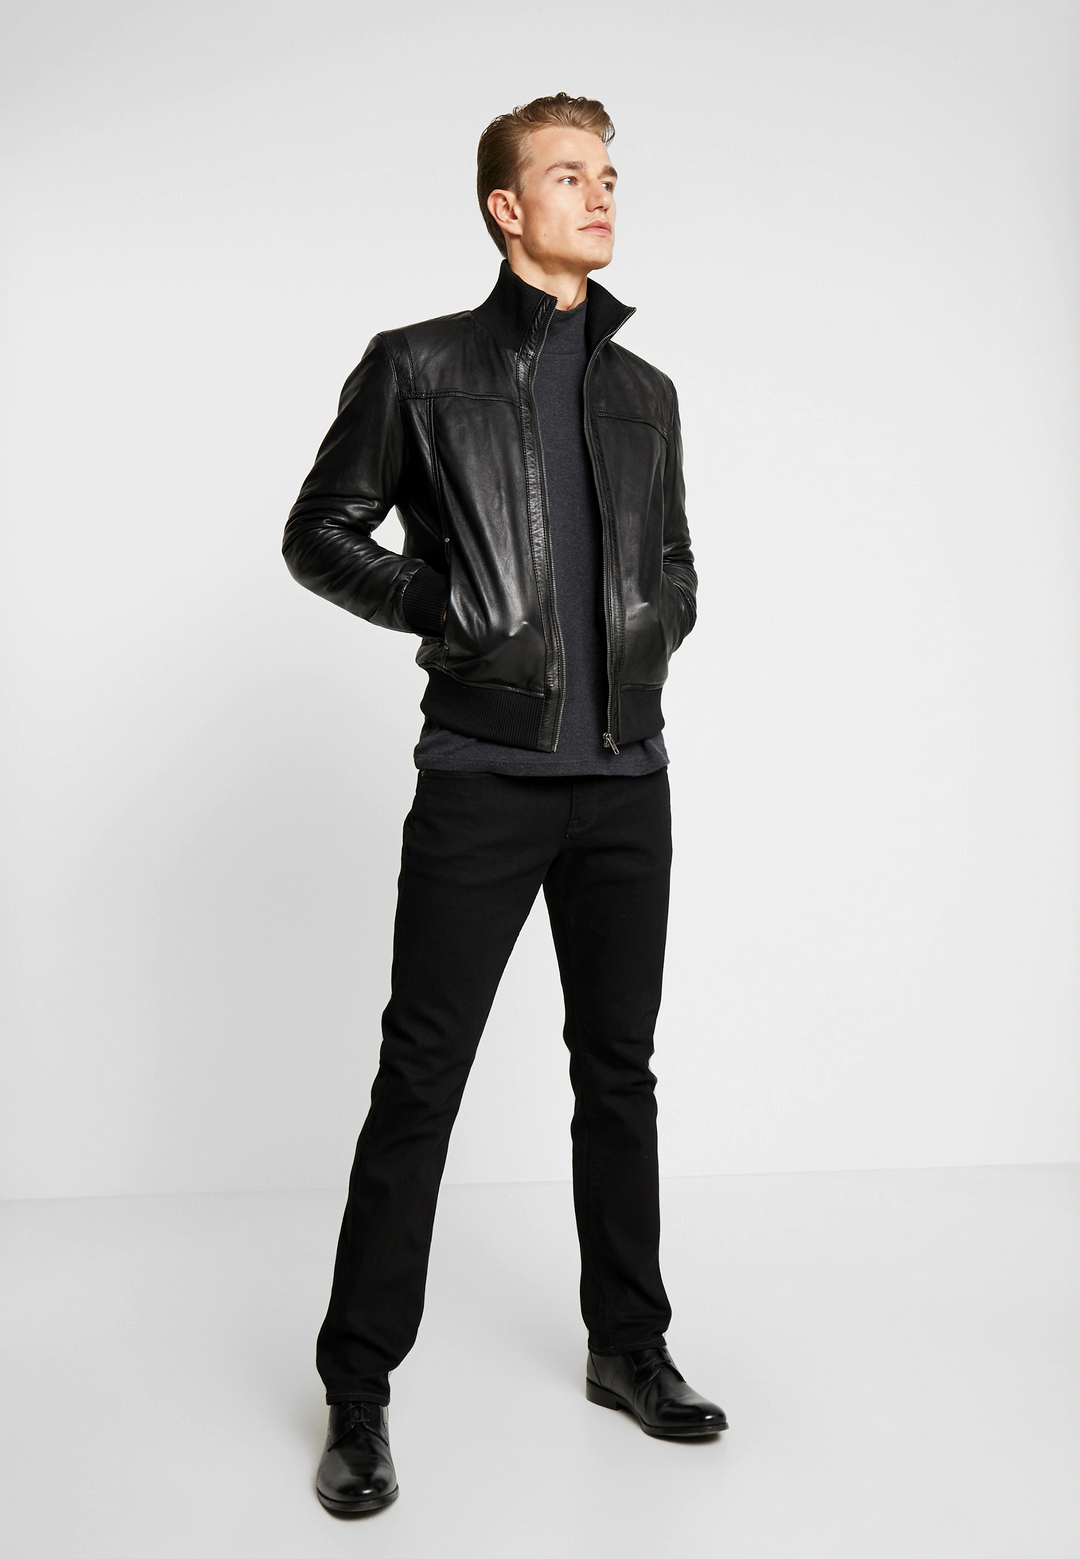 Highschool Black Leather Jacket | Men | Lambskin | Leatherwear ...